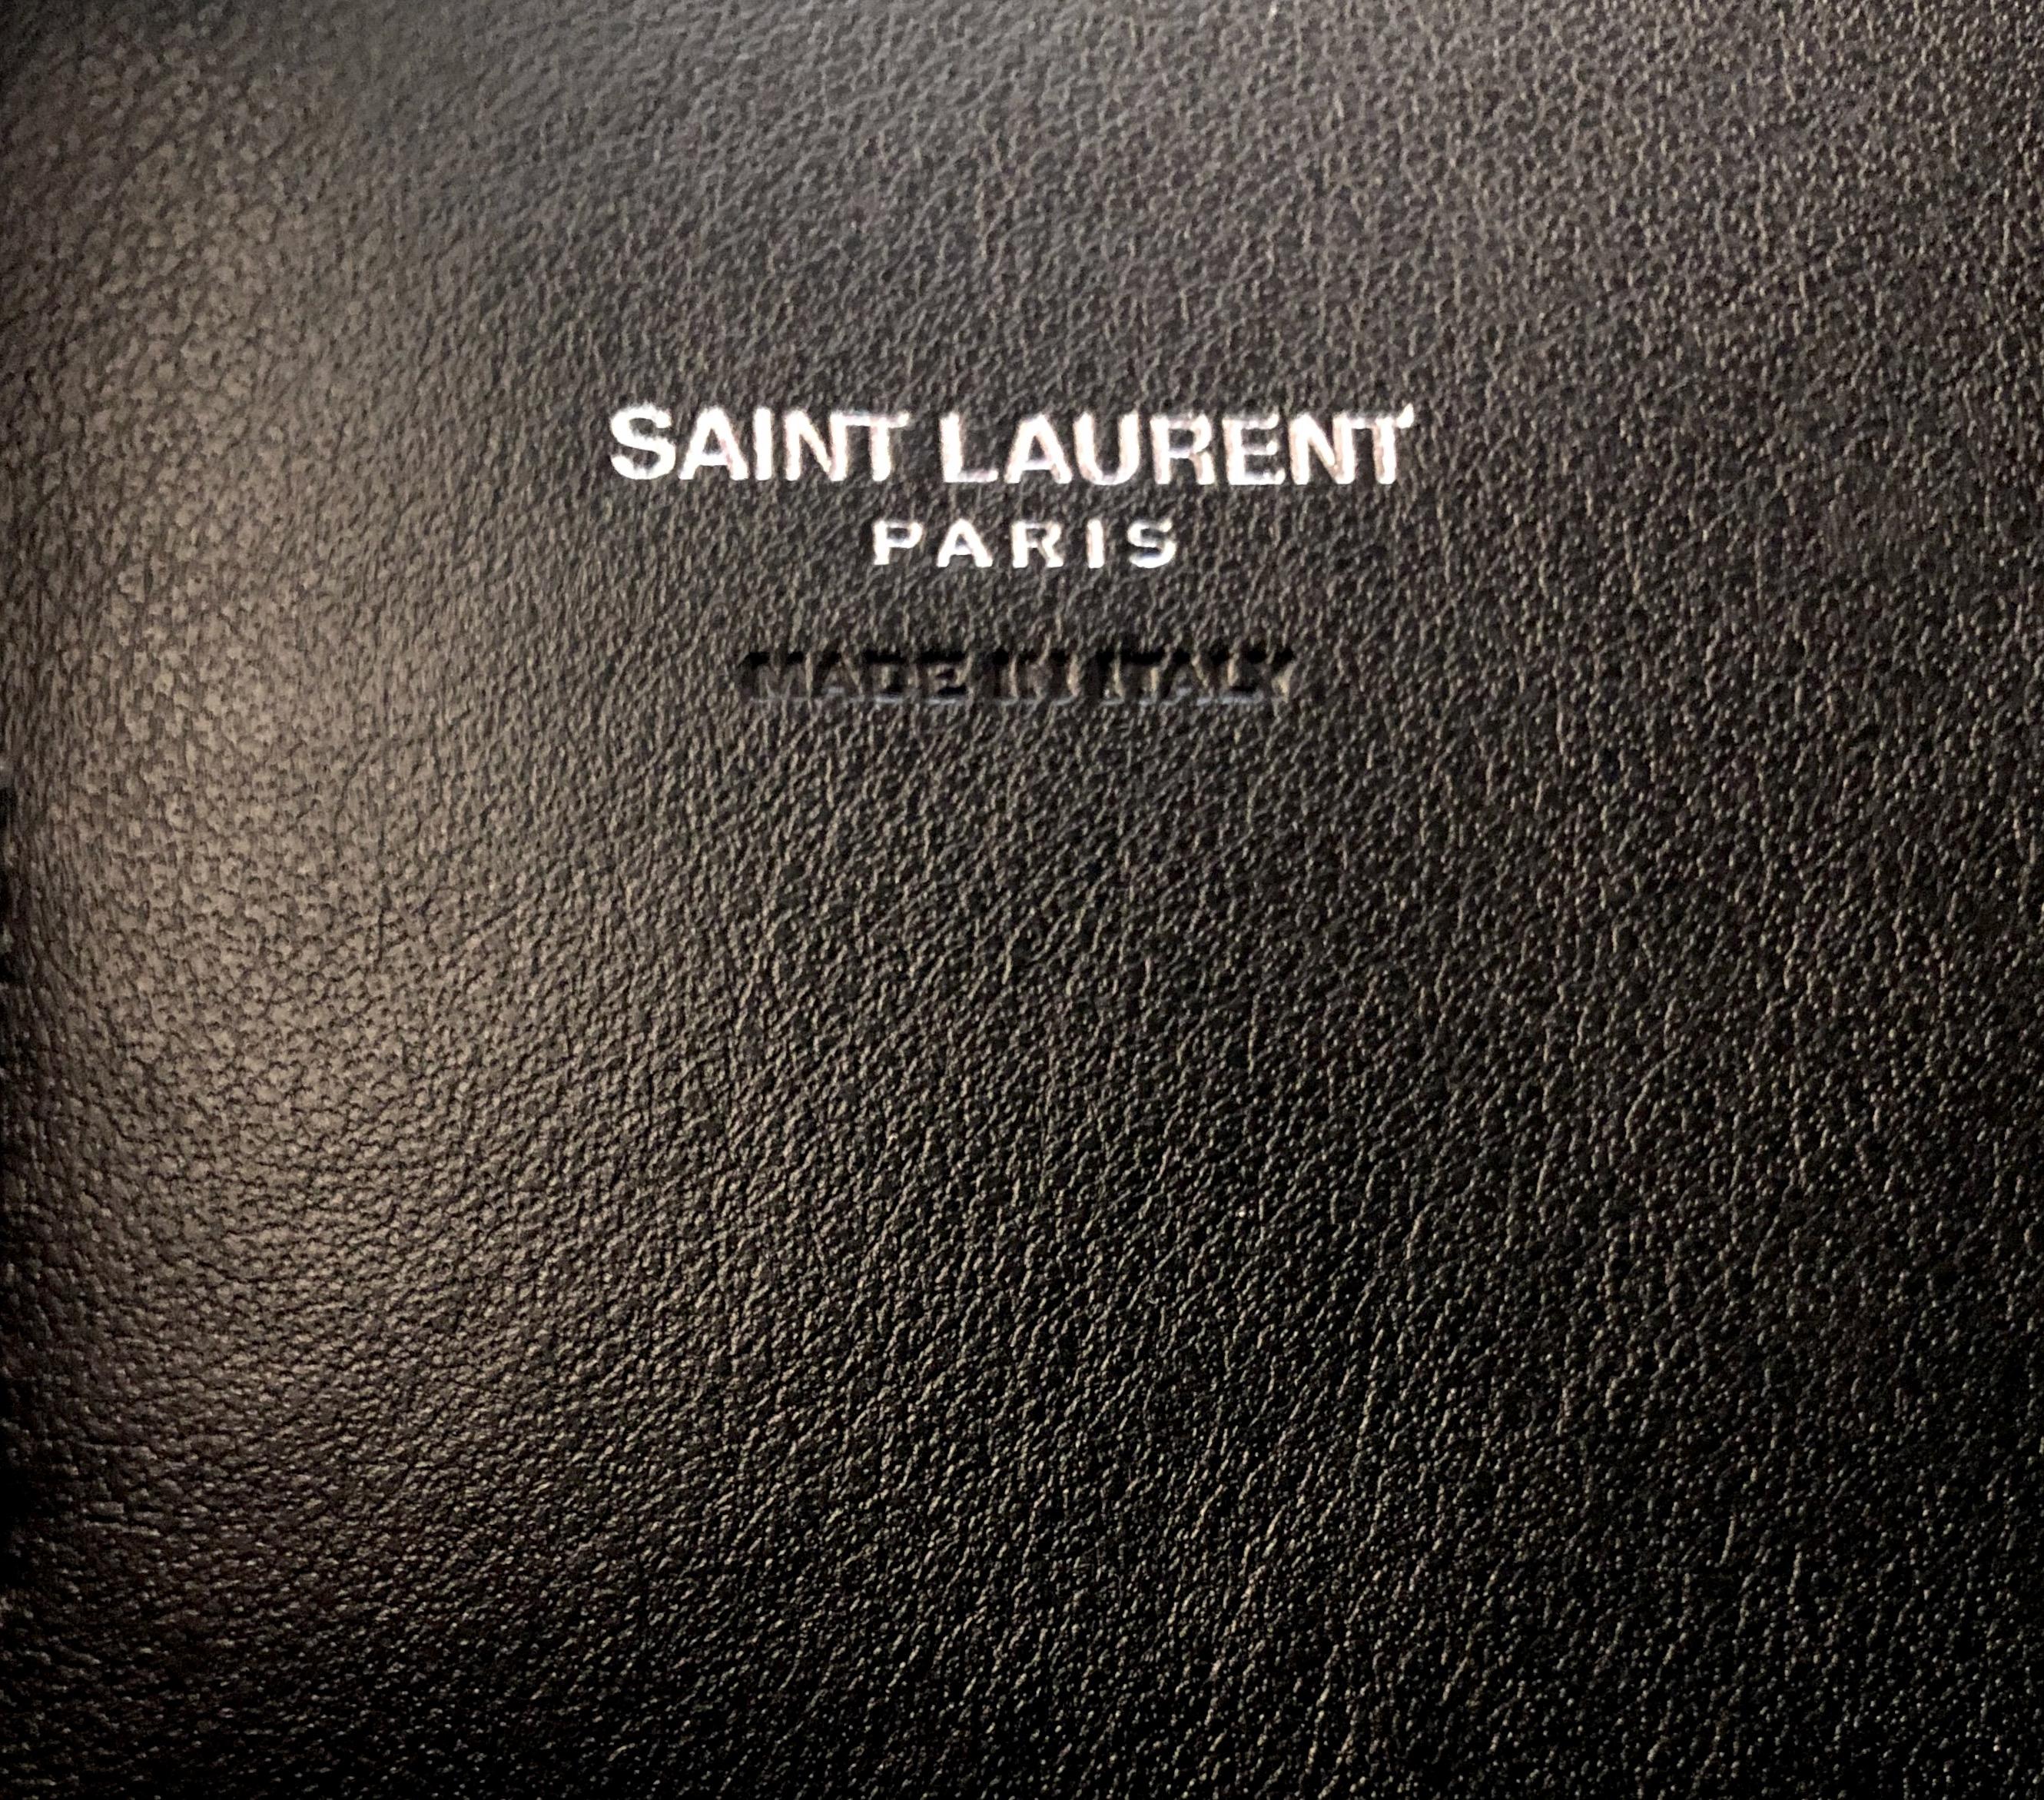 Saint Laurent Black and White Sac de Jour Bag 5